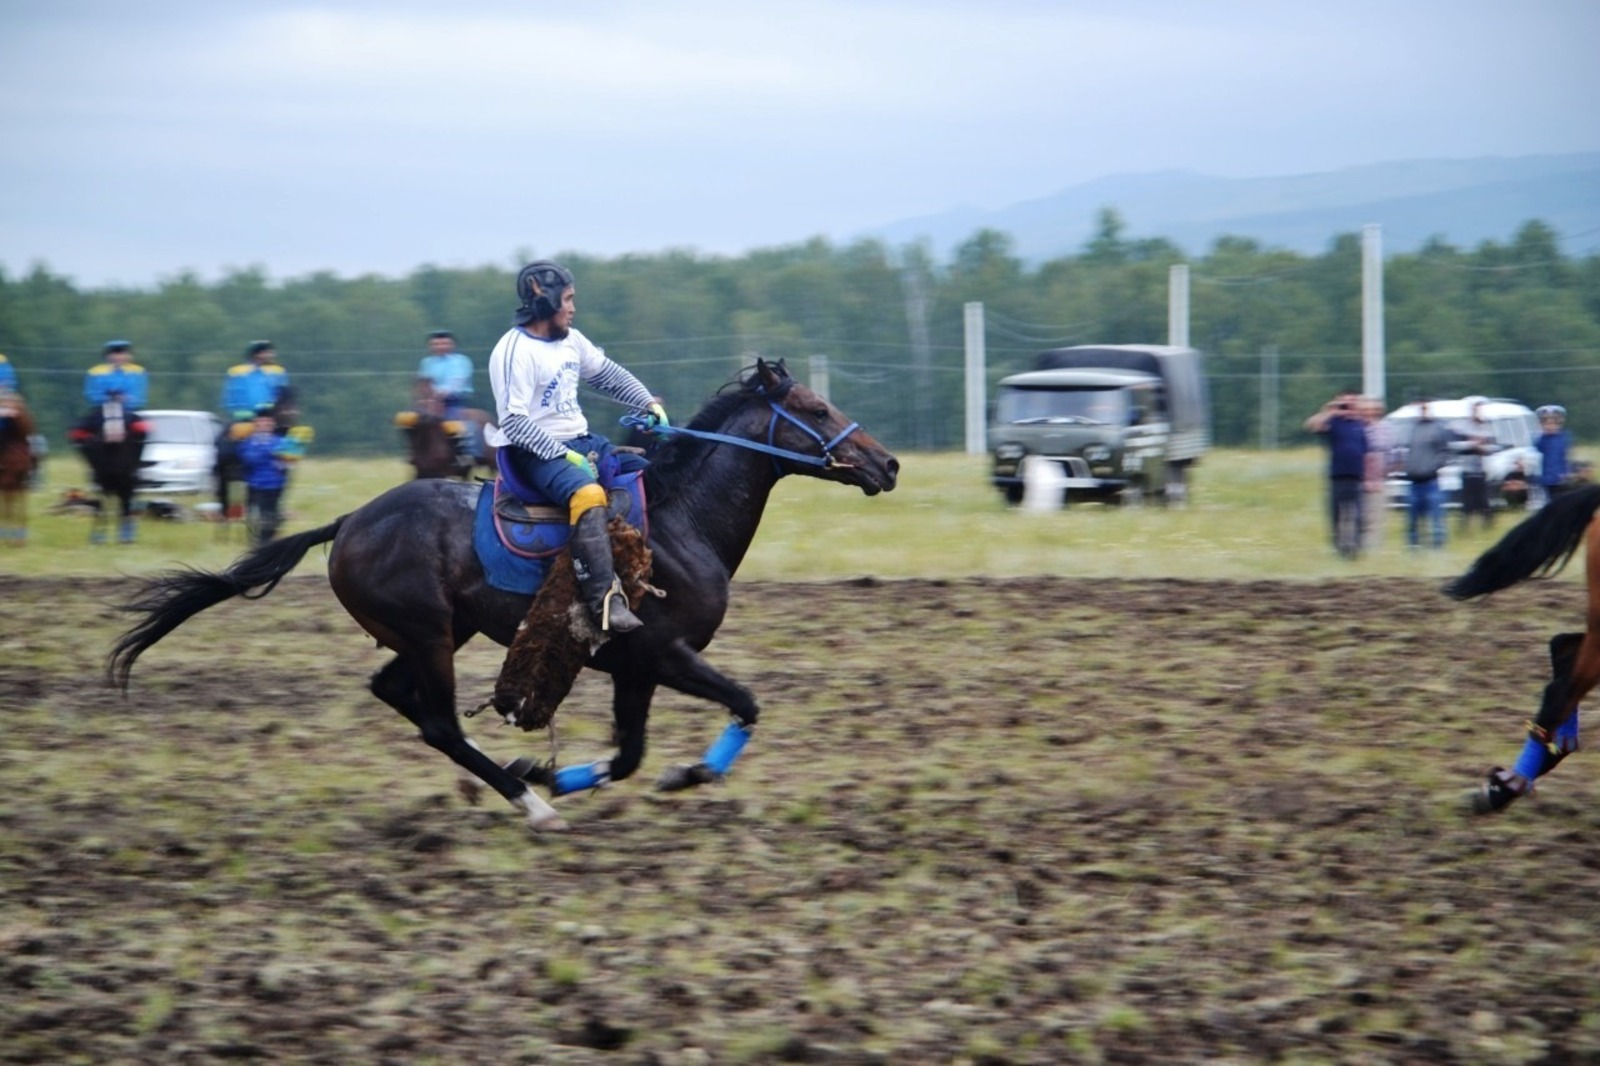 На фестивале башкирских лошадей прошёл древний обряд козлодрания